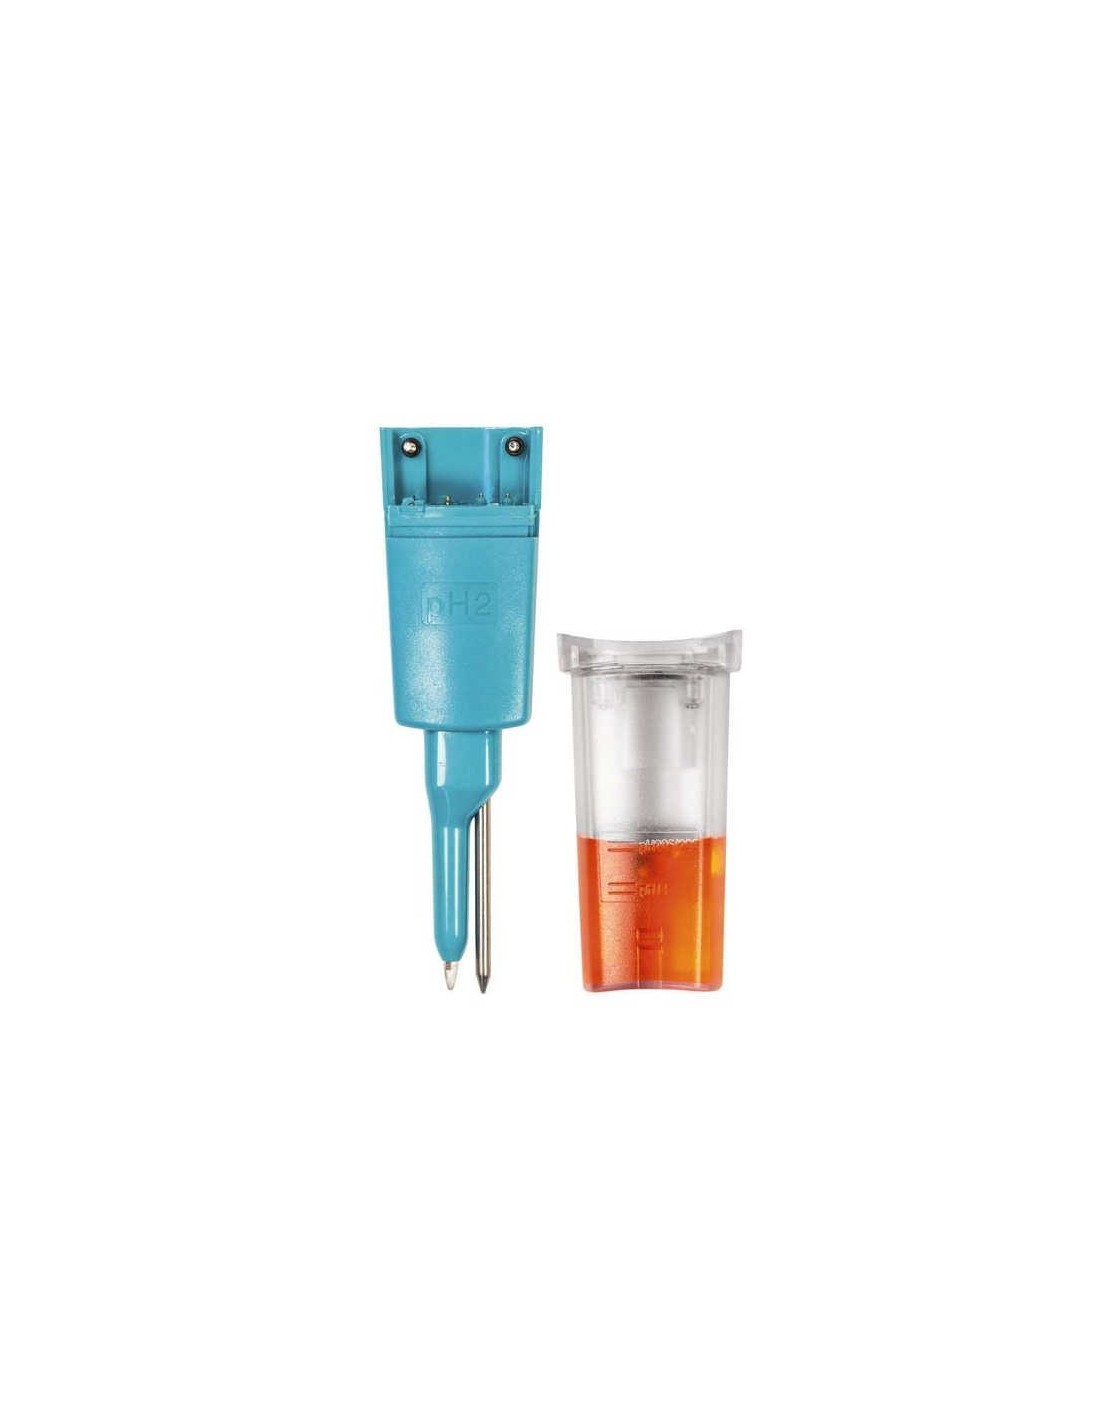 Elektroda zapasowa pH do testo 206-PH2 ze zbiornikiem z żelem